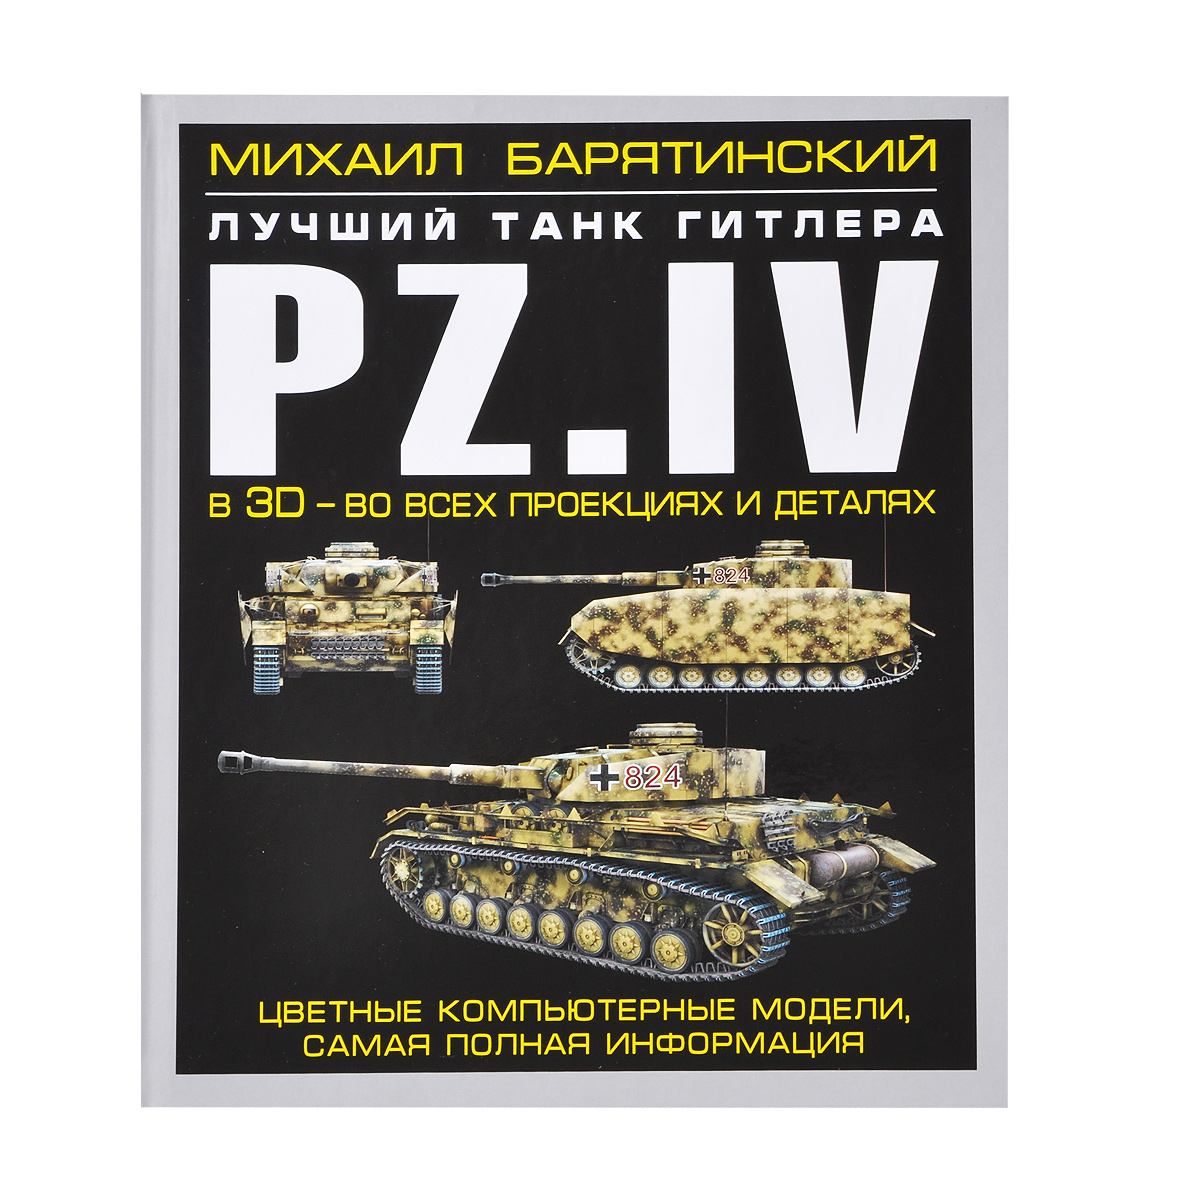 Pz. IV. Лучший танк Гитлера в 3D - во всех проекциях и деталях